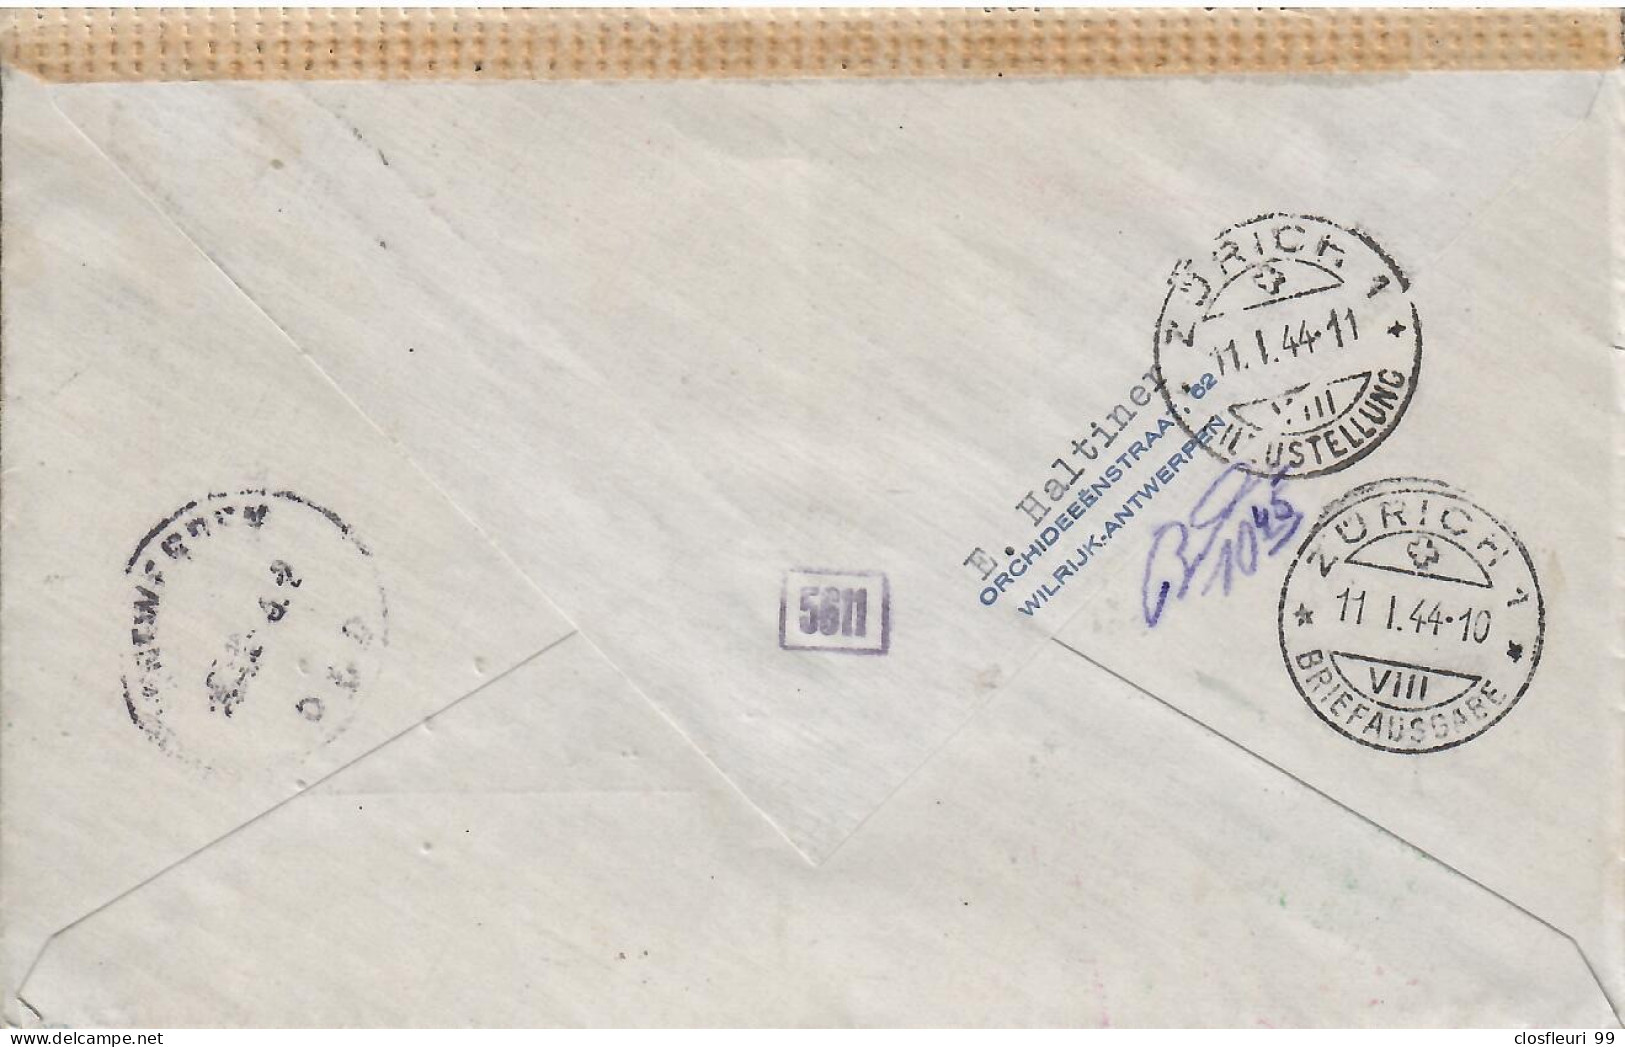 Lettre Censurée, Exprès,11.+.1944 Pour Zürich / Cf Diverses Marques Et Cachets - Guerra '40-'45 (Storia Postale)